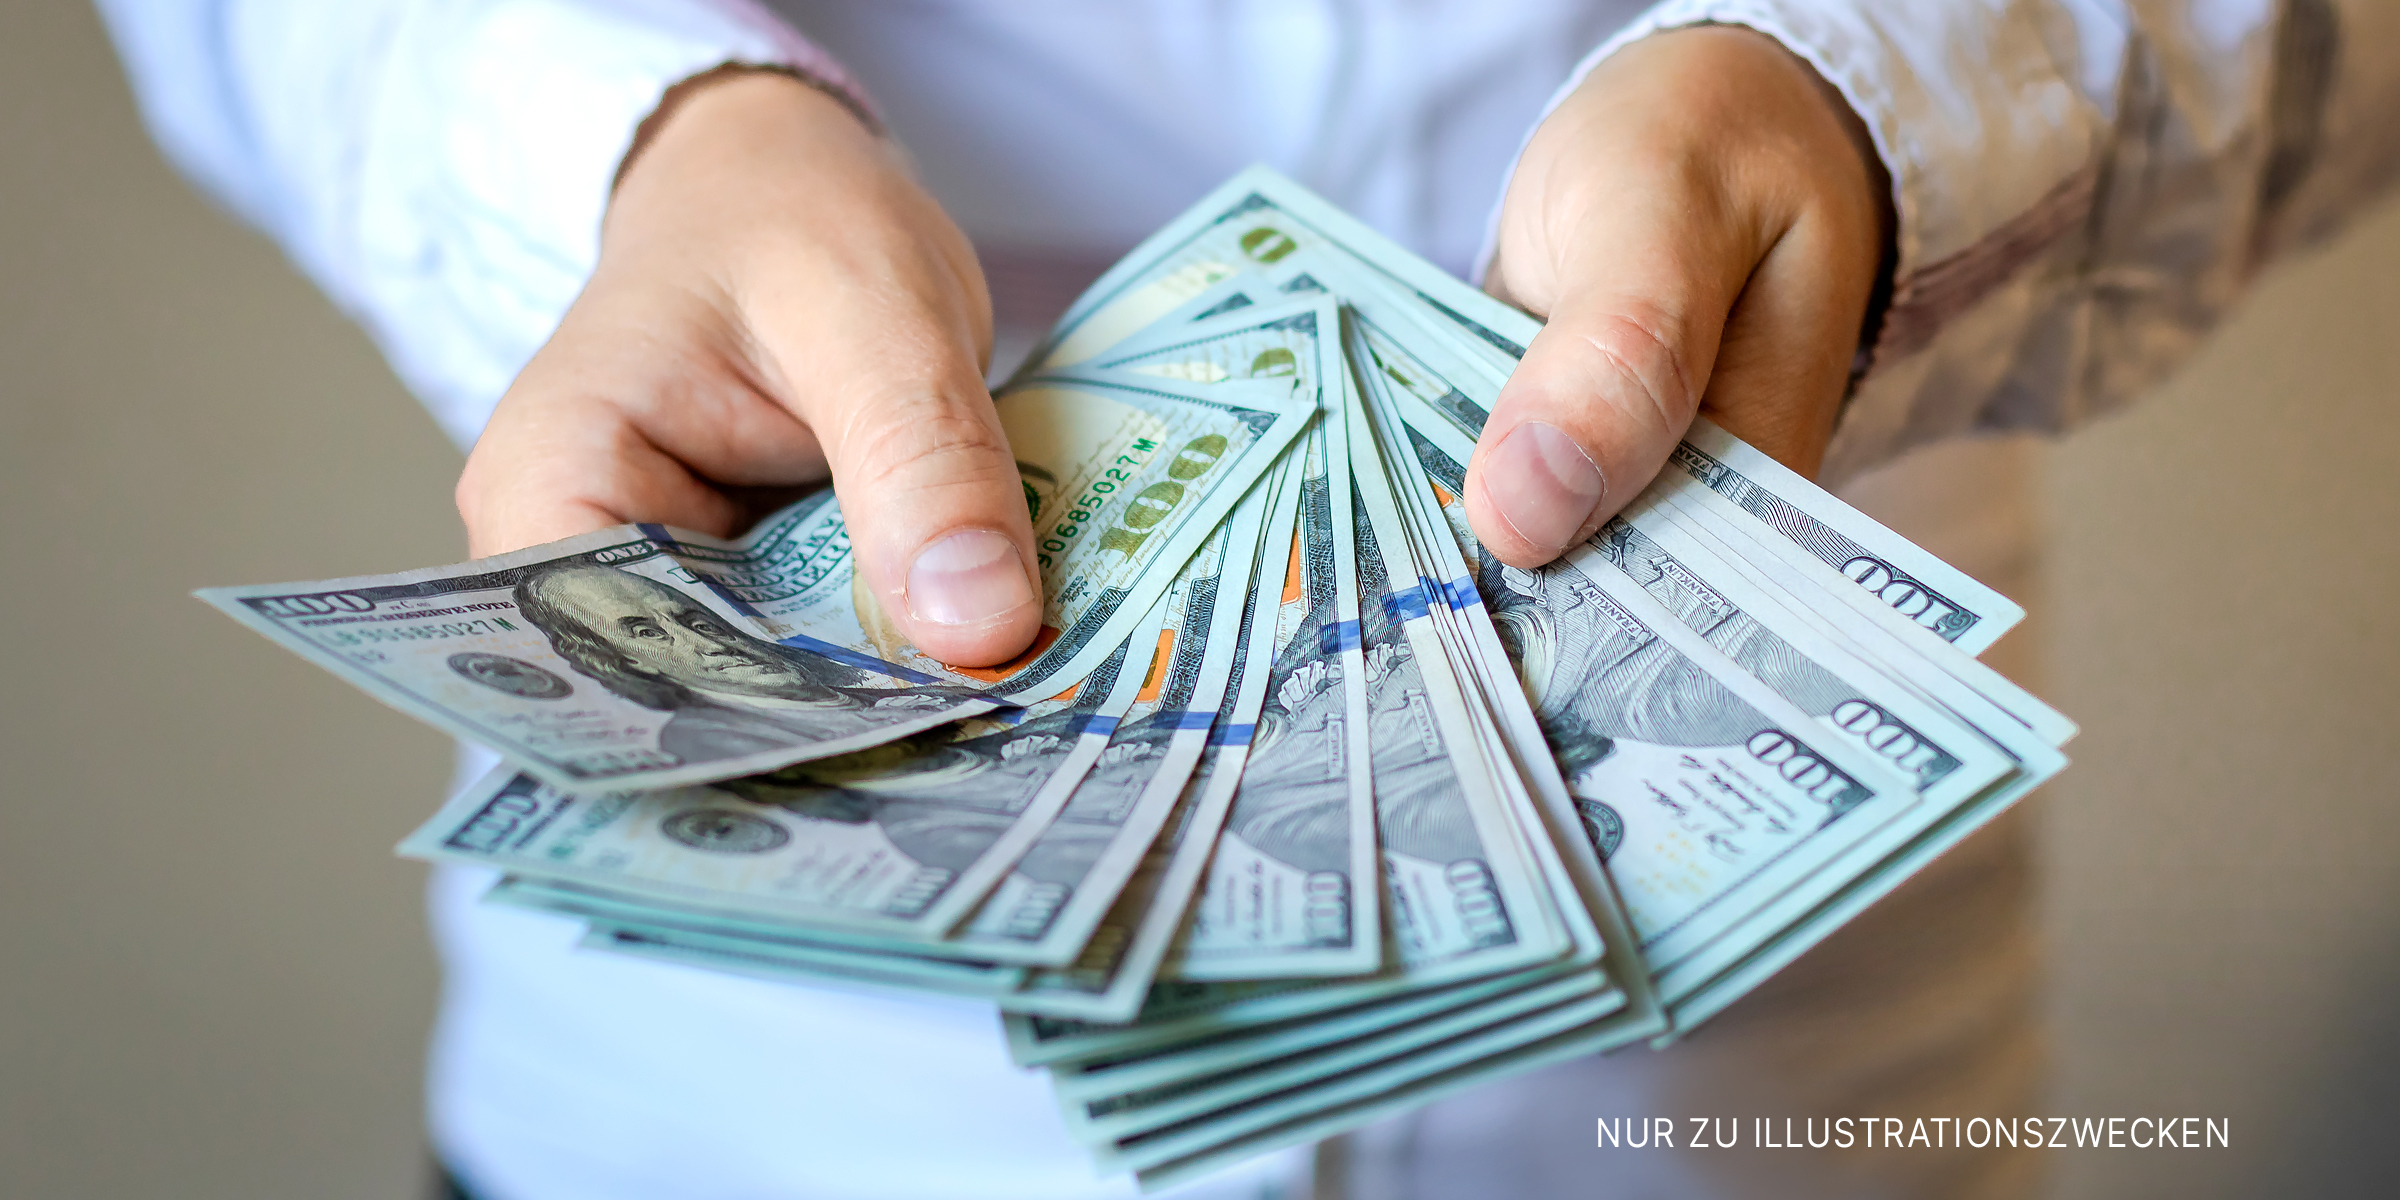 Eine Person mit Dollarscheinen in der Hand | Quelle: Shutterstock